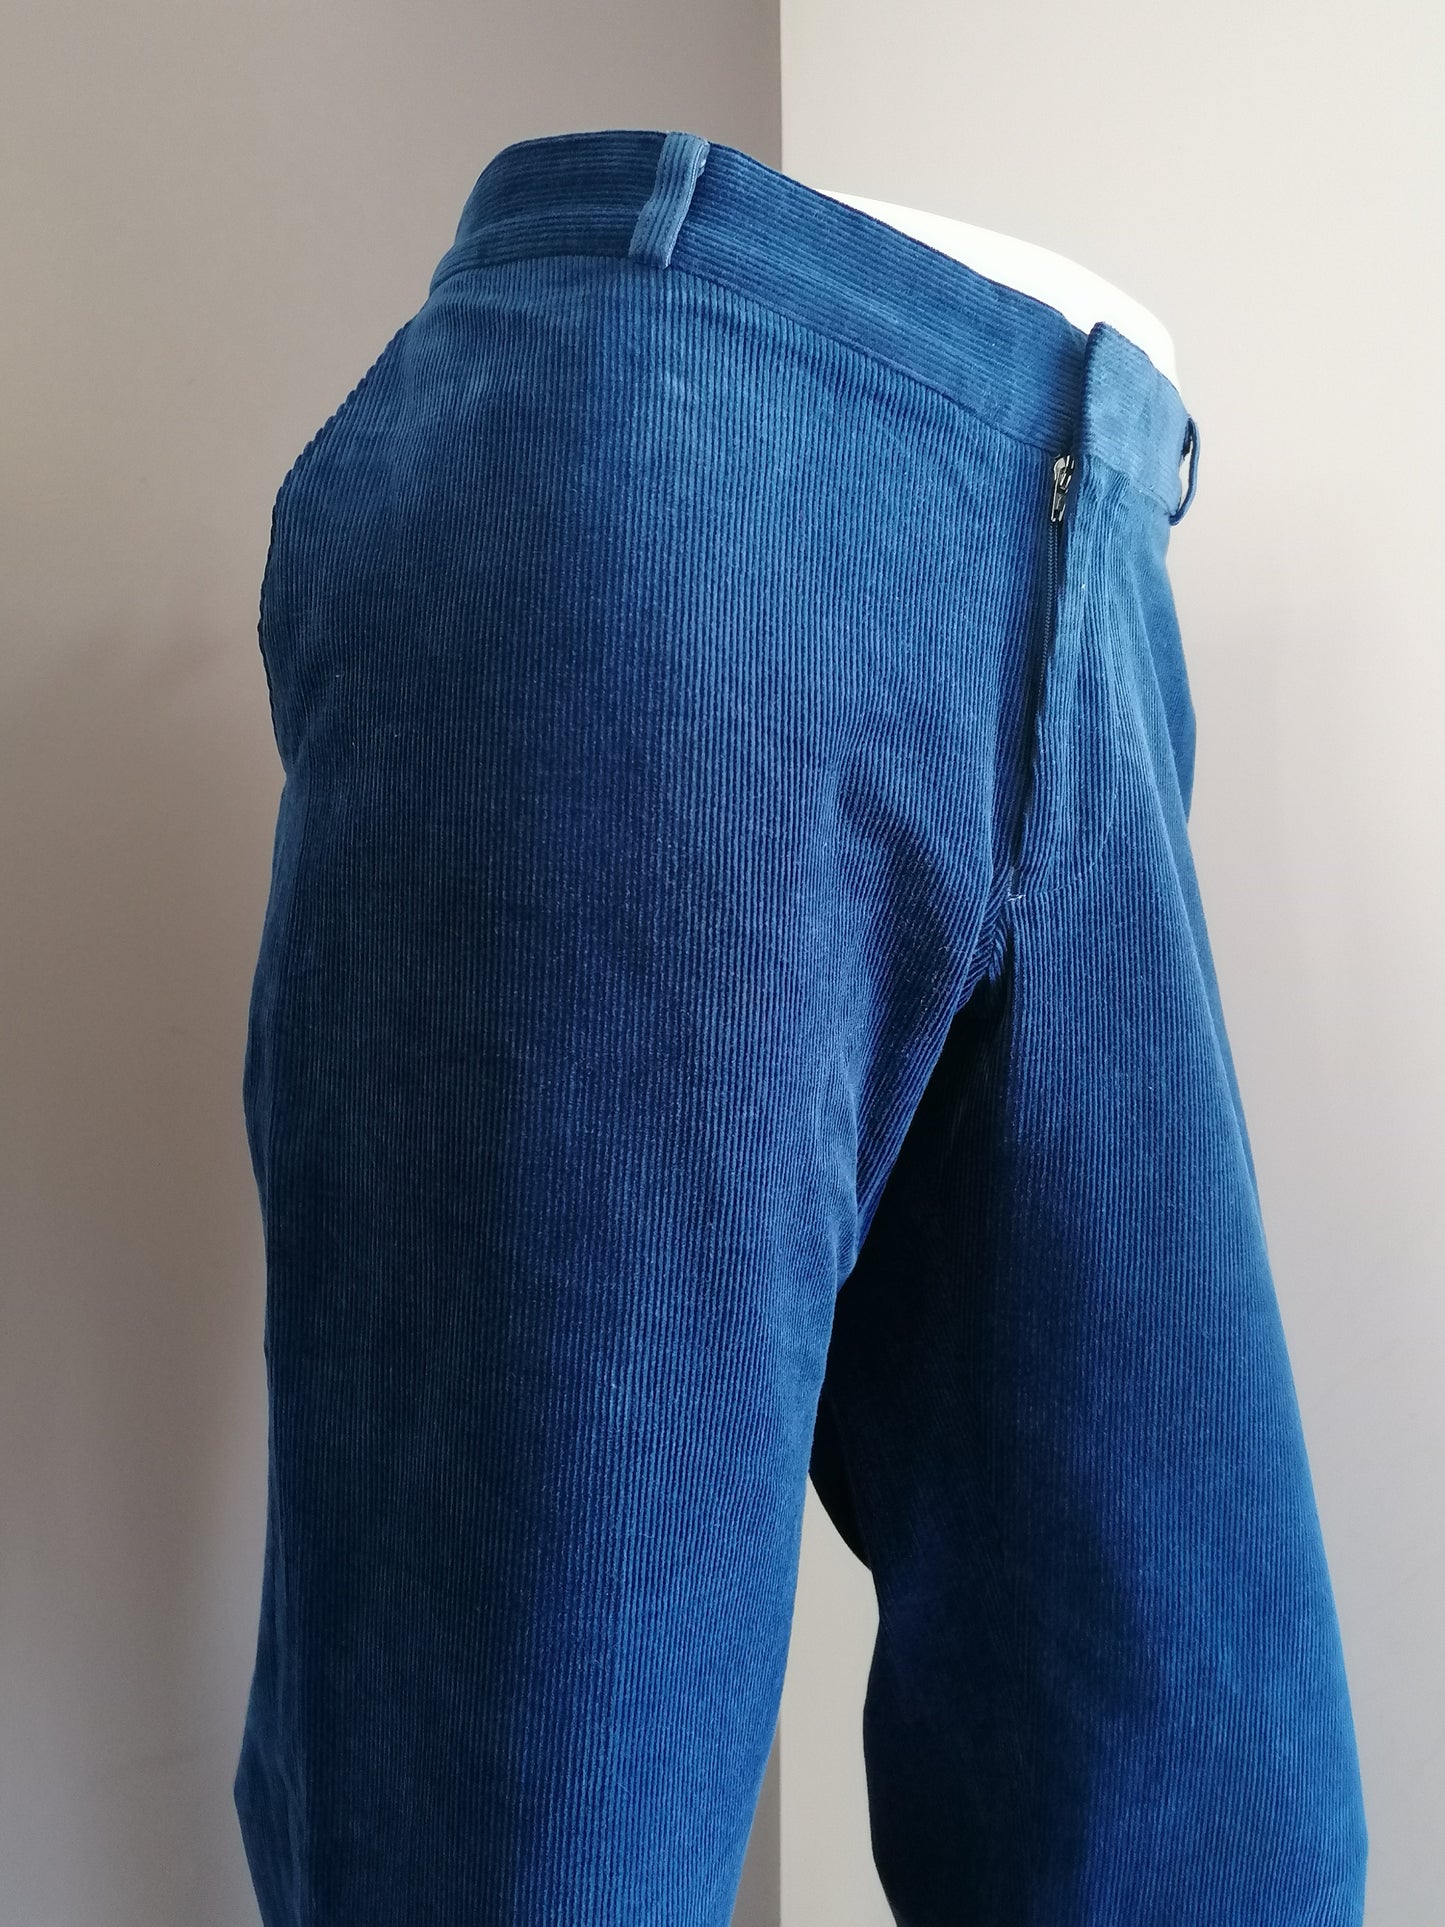 Pantaloni / pantaloni per costole elastica di comfort. Colorato blu. Dimensione 27 (54/L)